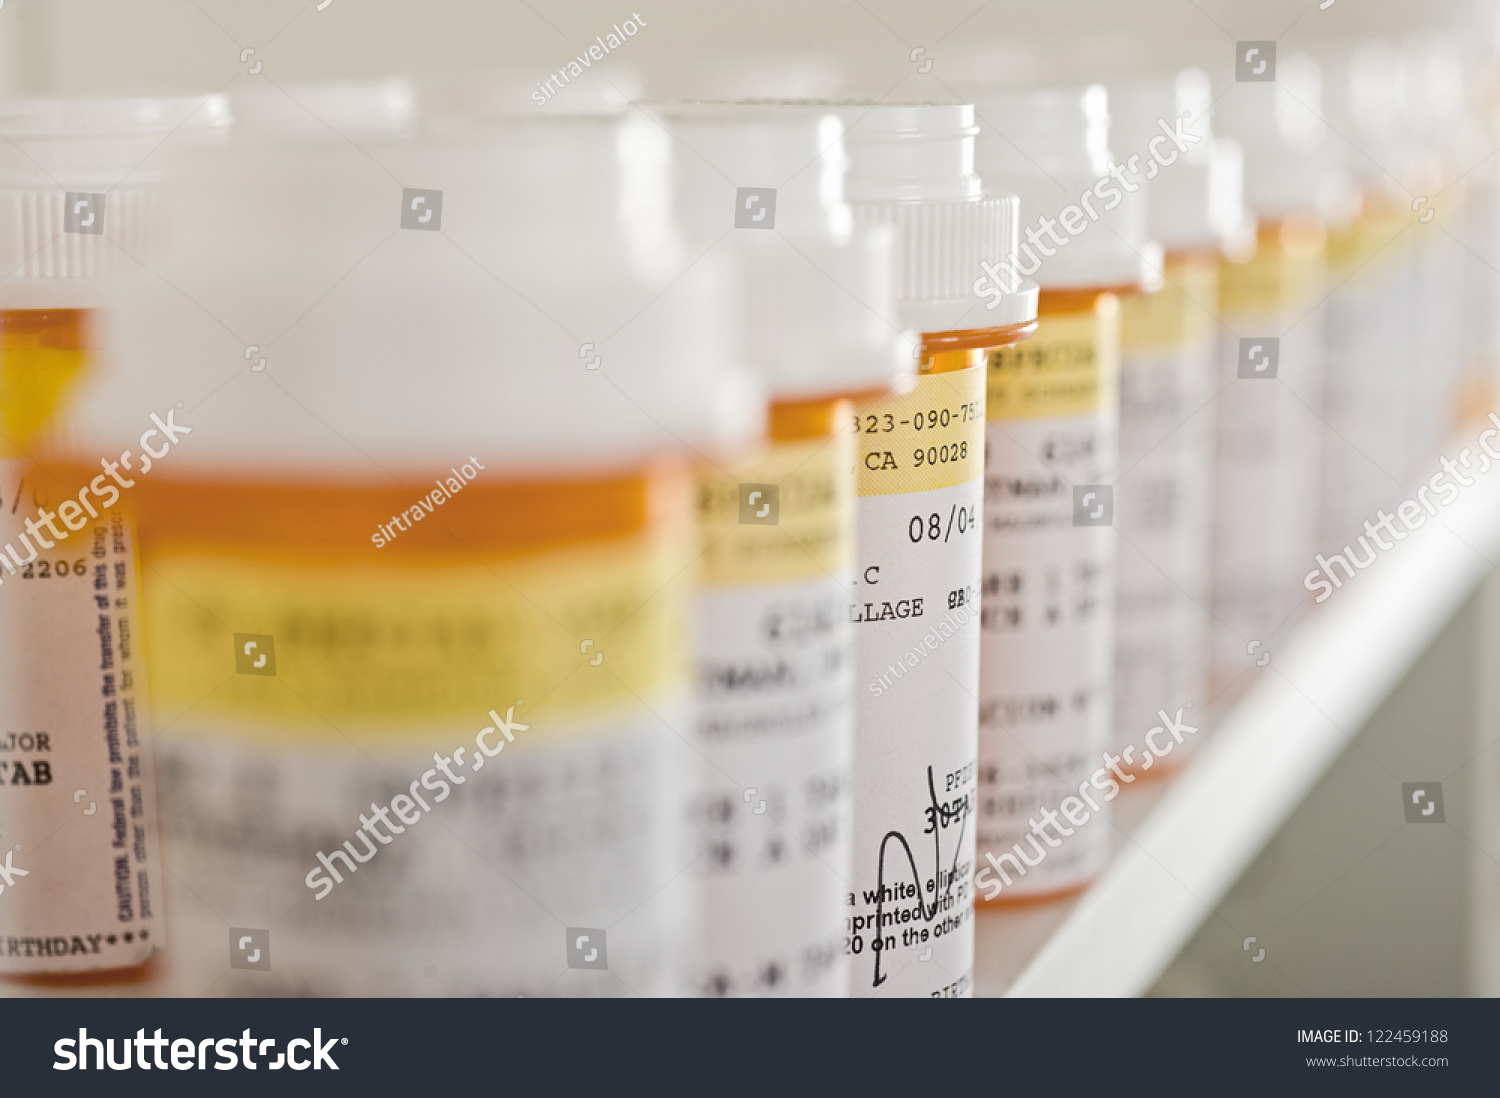 Bottles of pills arranged on shelf at drugstore #122459188